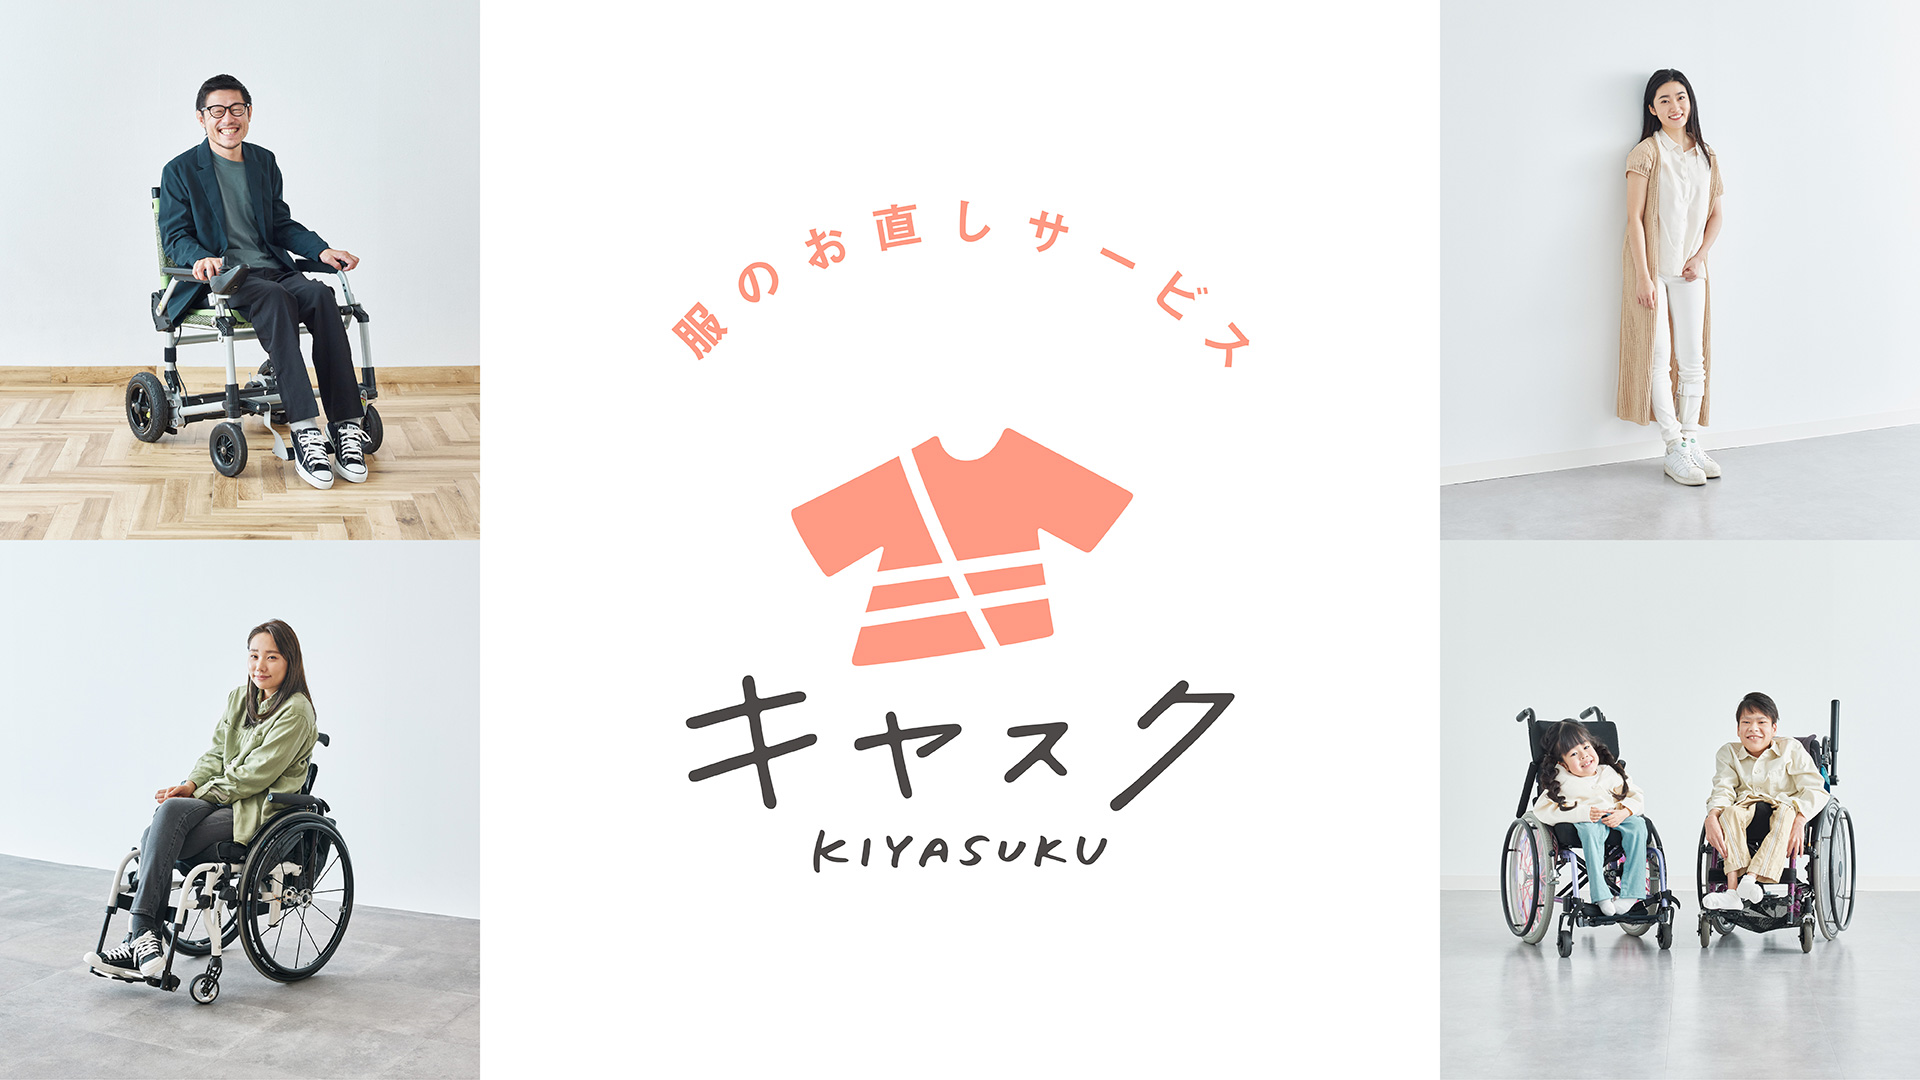 Kiyasuku, un service de retouche de vêtements